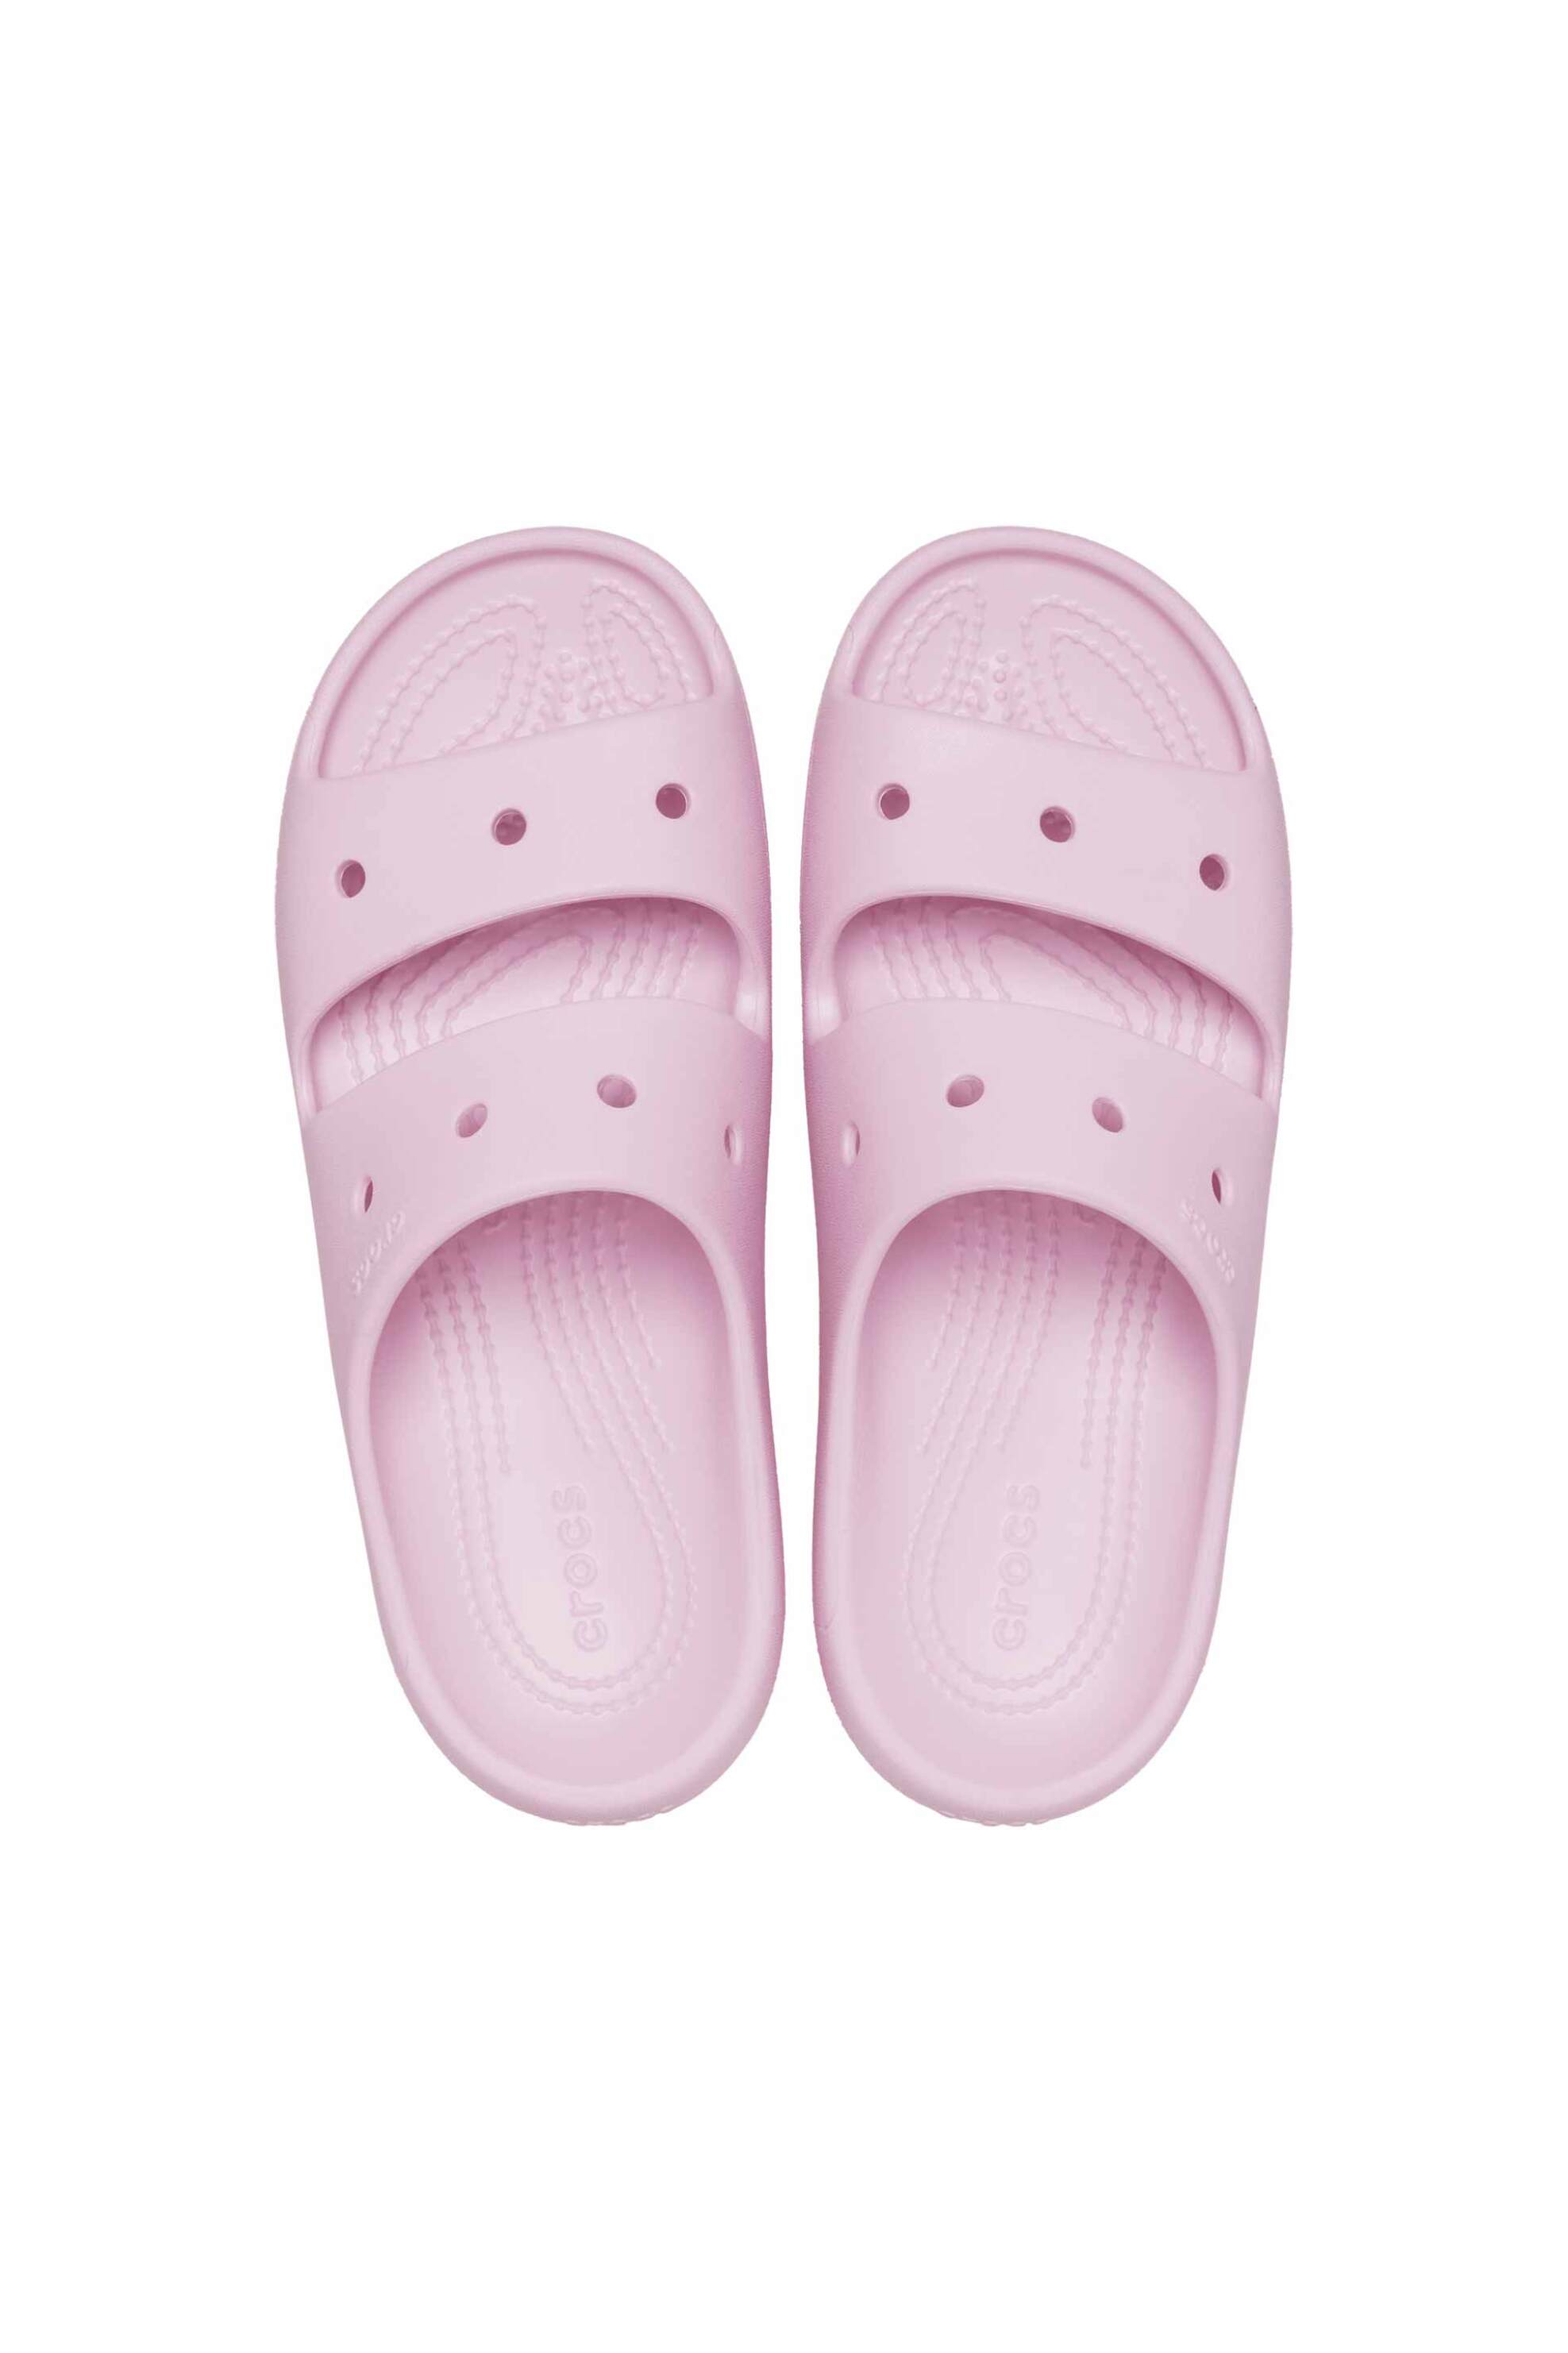 Ανδρική Μόδα > Ανδρικά Παπούτσια > Ανδρικές Παντόφλες & Σαγιονάρες Crocs unisex σαγιονάρες "Classic Sandal 2.0" - E61131 Ροζ